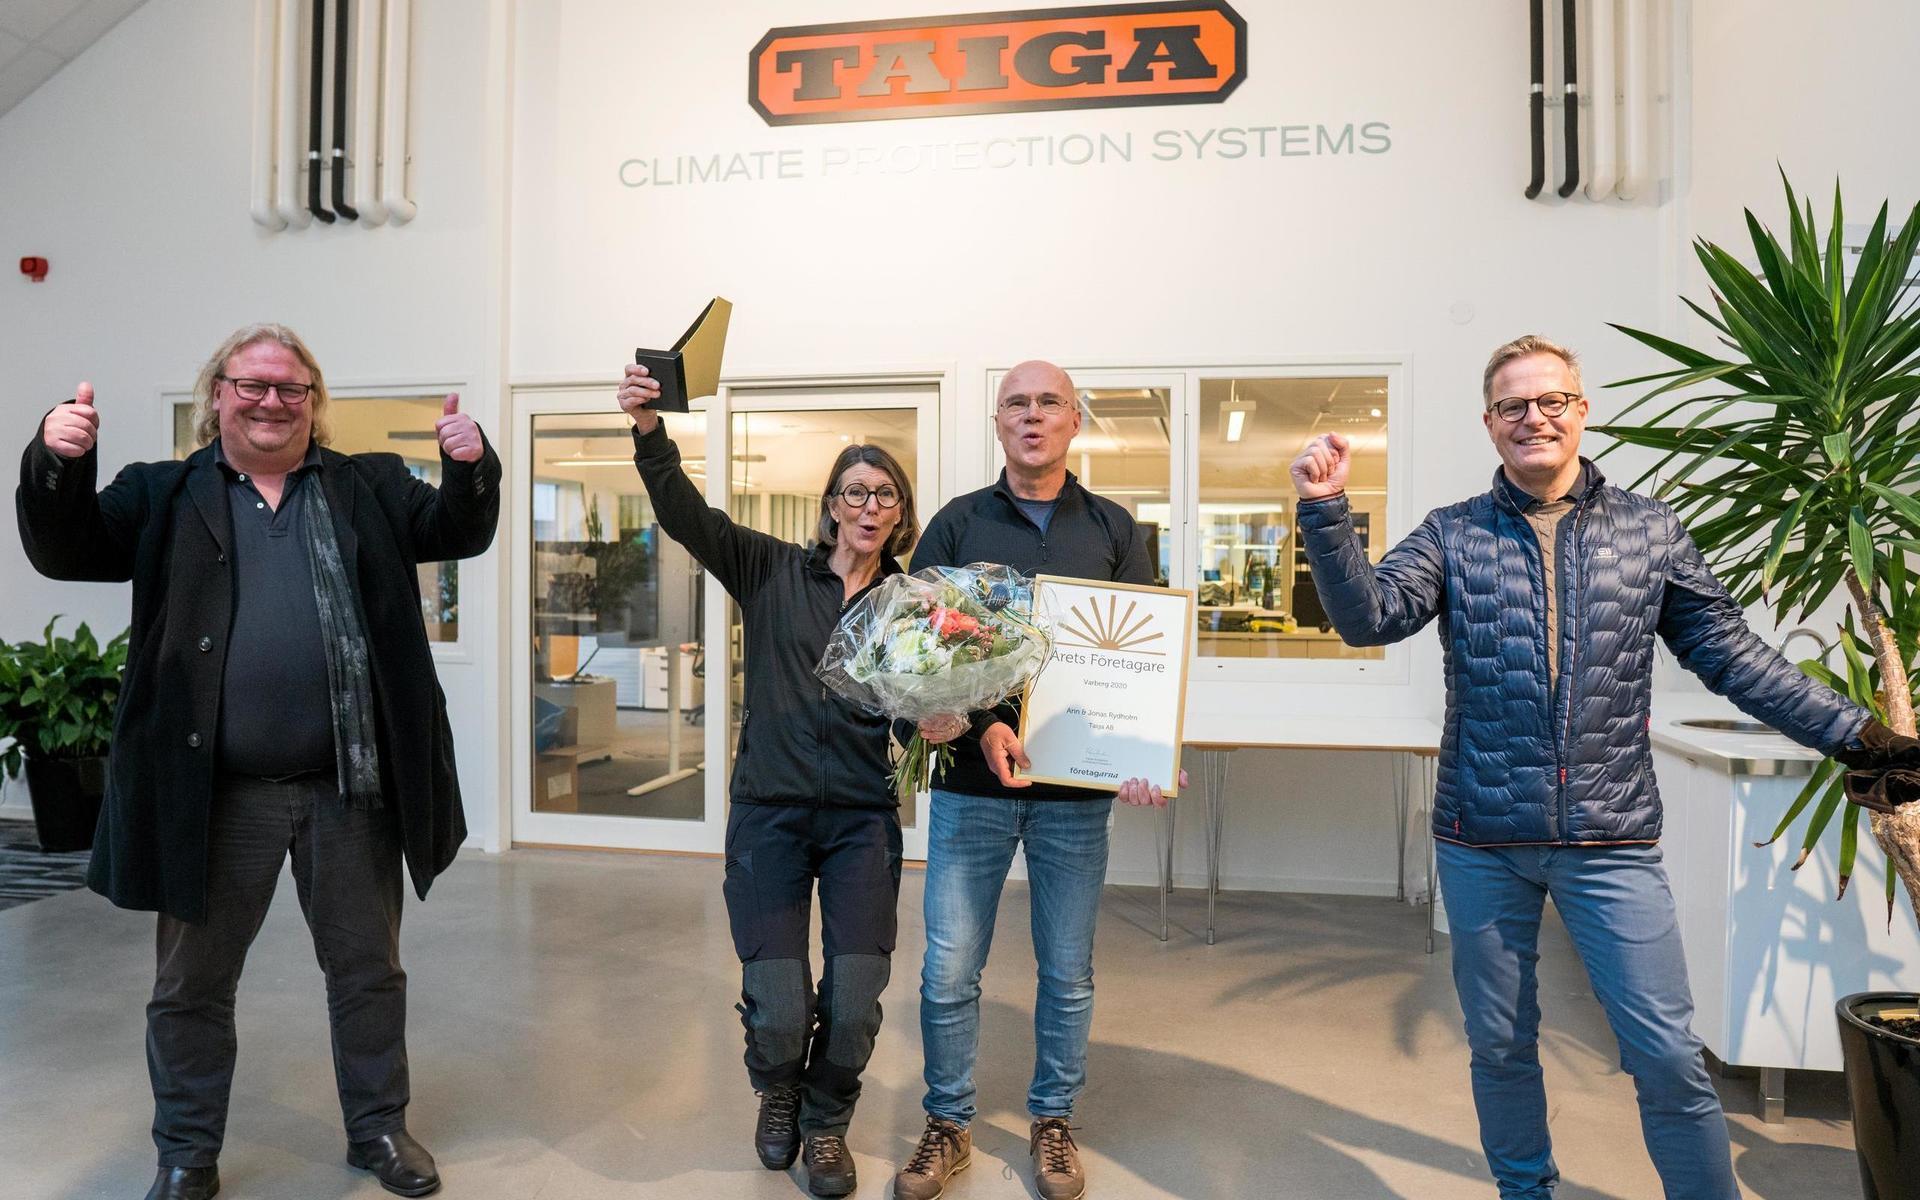 Taiga utses till Årets företagare 2020 på den digitala Varbergsgalan.